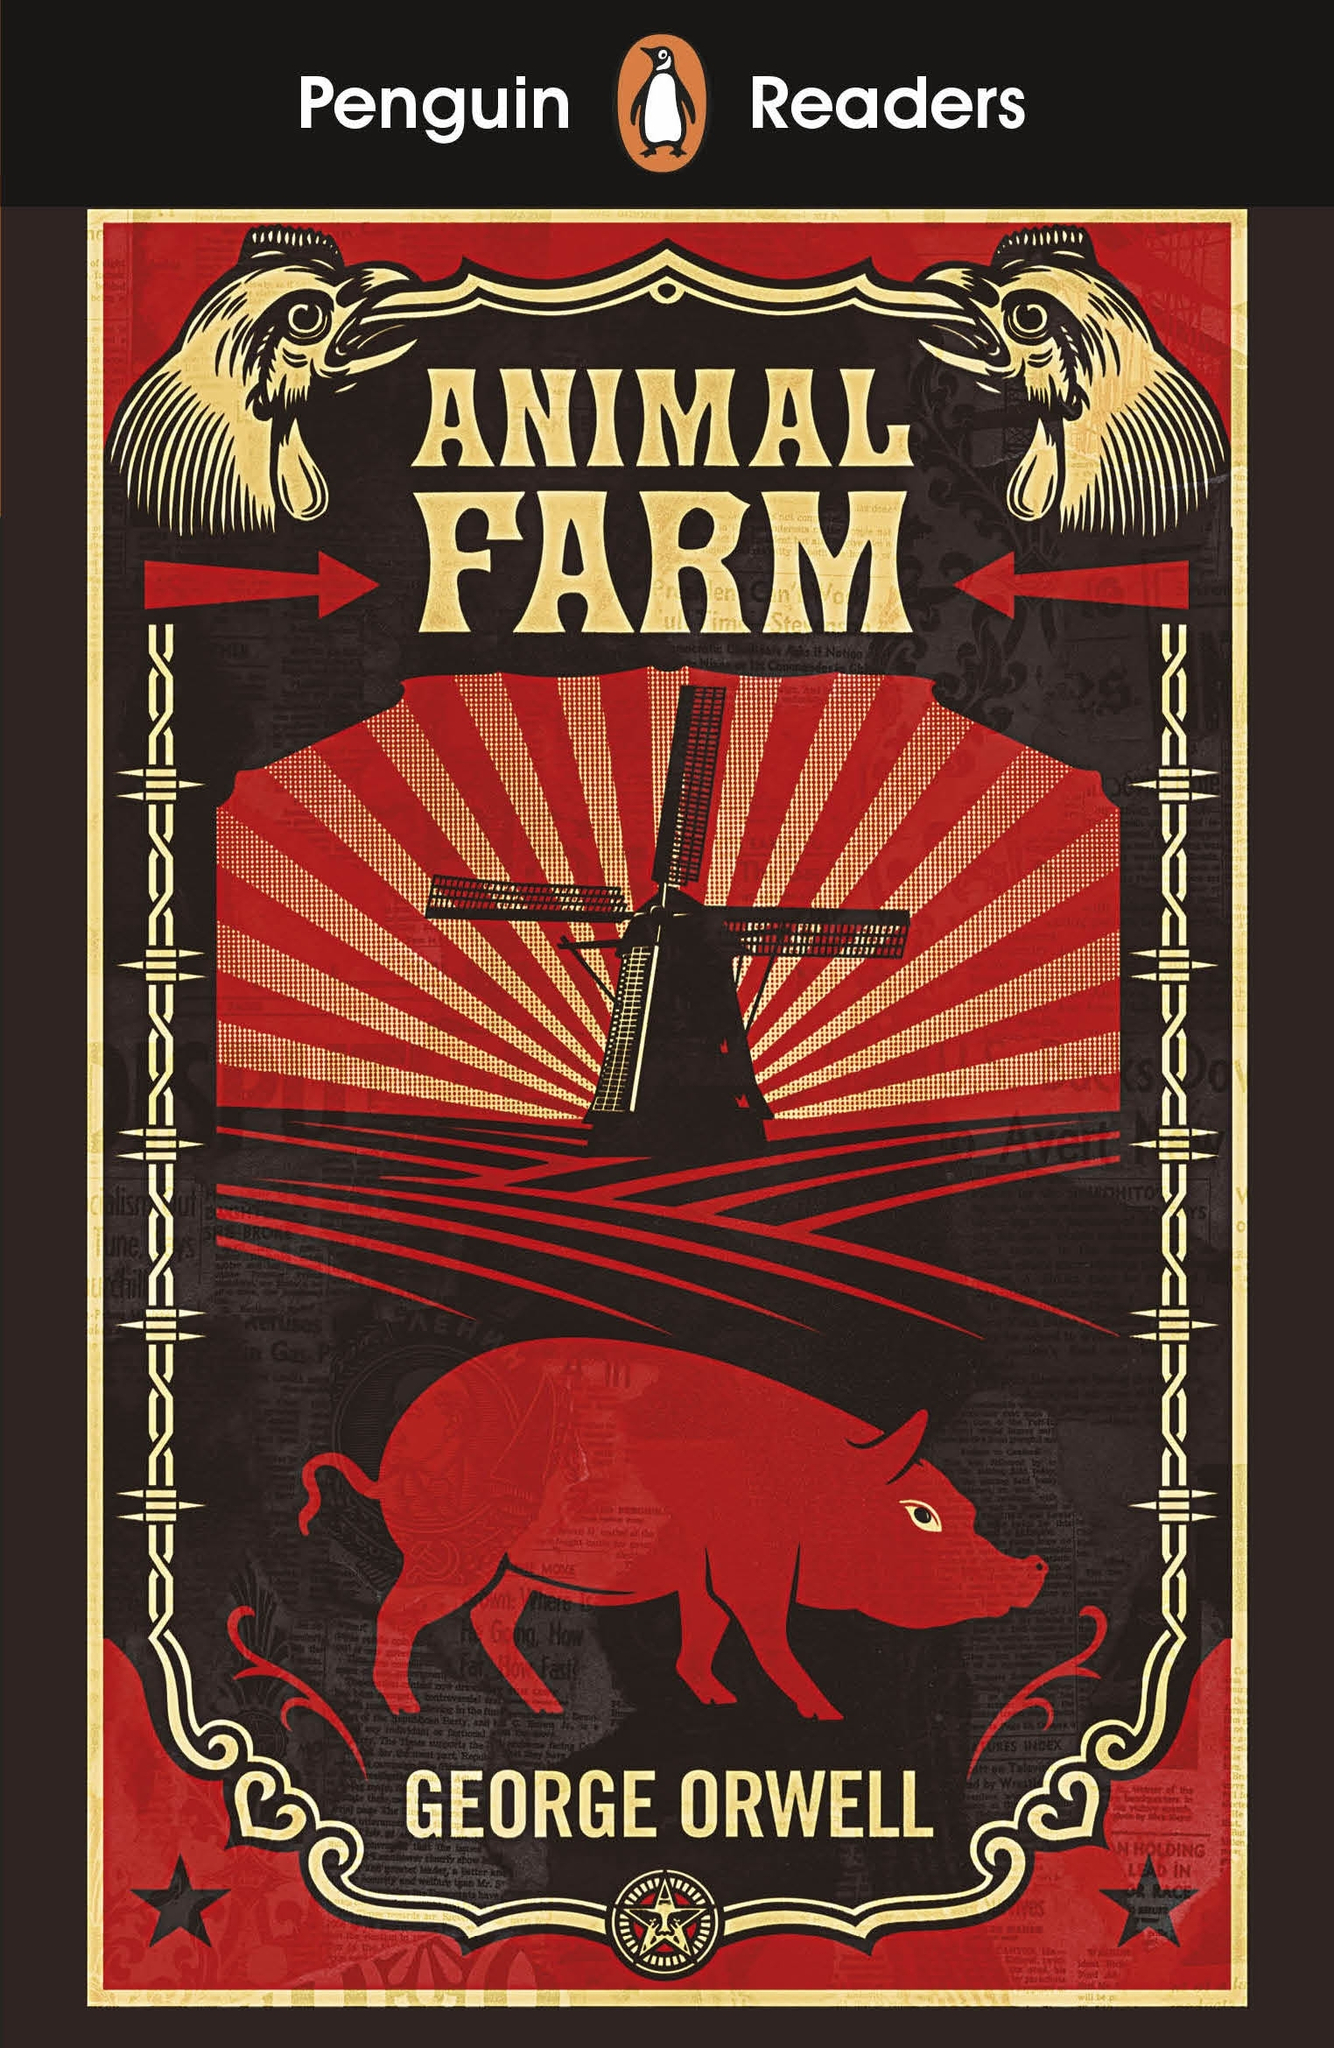 Trại súc vật (tên tiếng Anh là Animal Farm) là một tiểu thuyết ngụ ngôn của